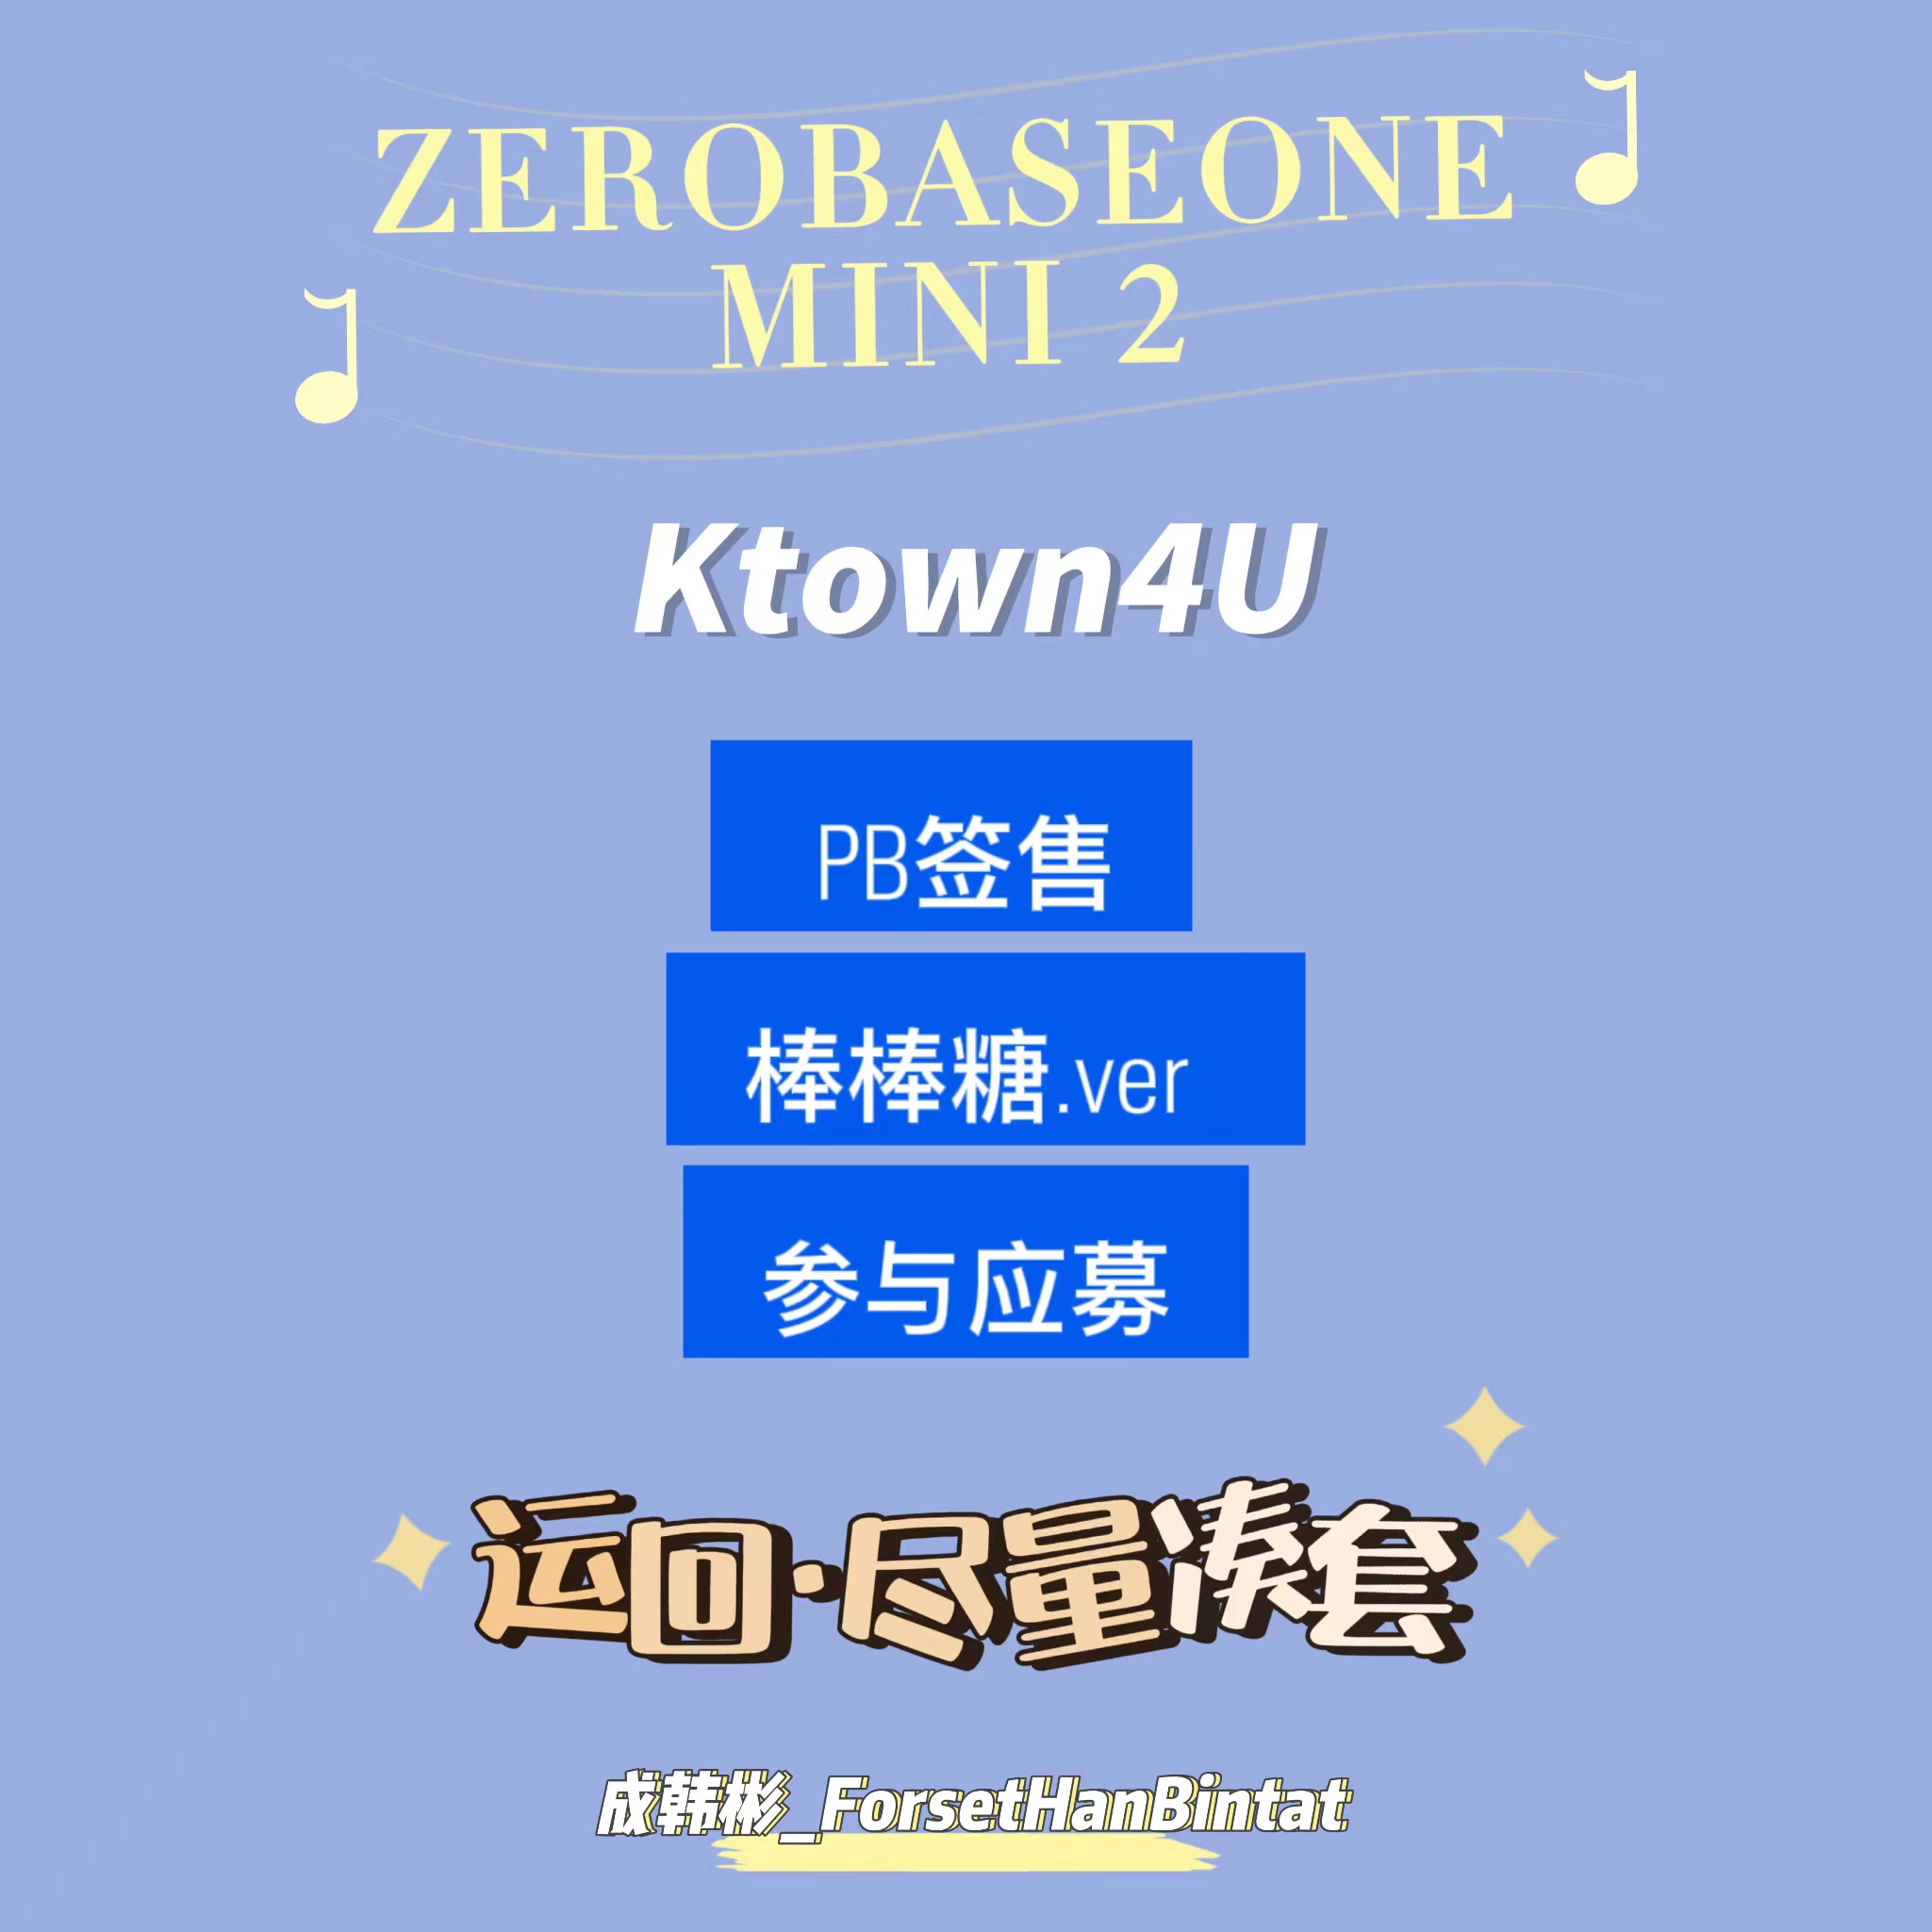 [全款 裸专] [4th] [视频签售活动] [SUNG HANBIN] ZEROBASEONE - The 2nd Mini Album [MELTING POINT] (Random Ver.)_成韩彬_ForestHanBintat